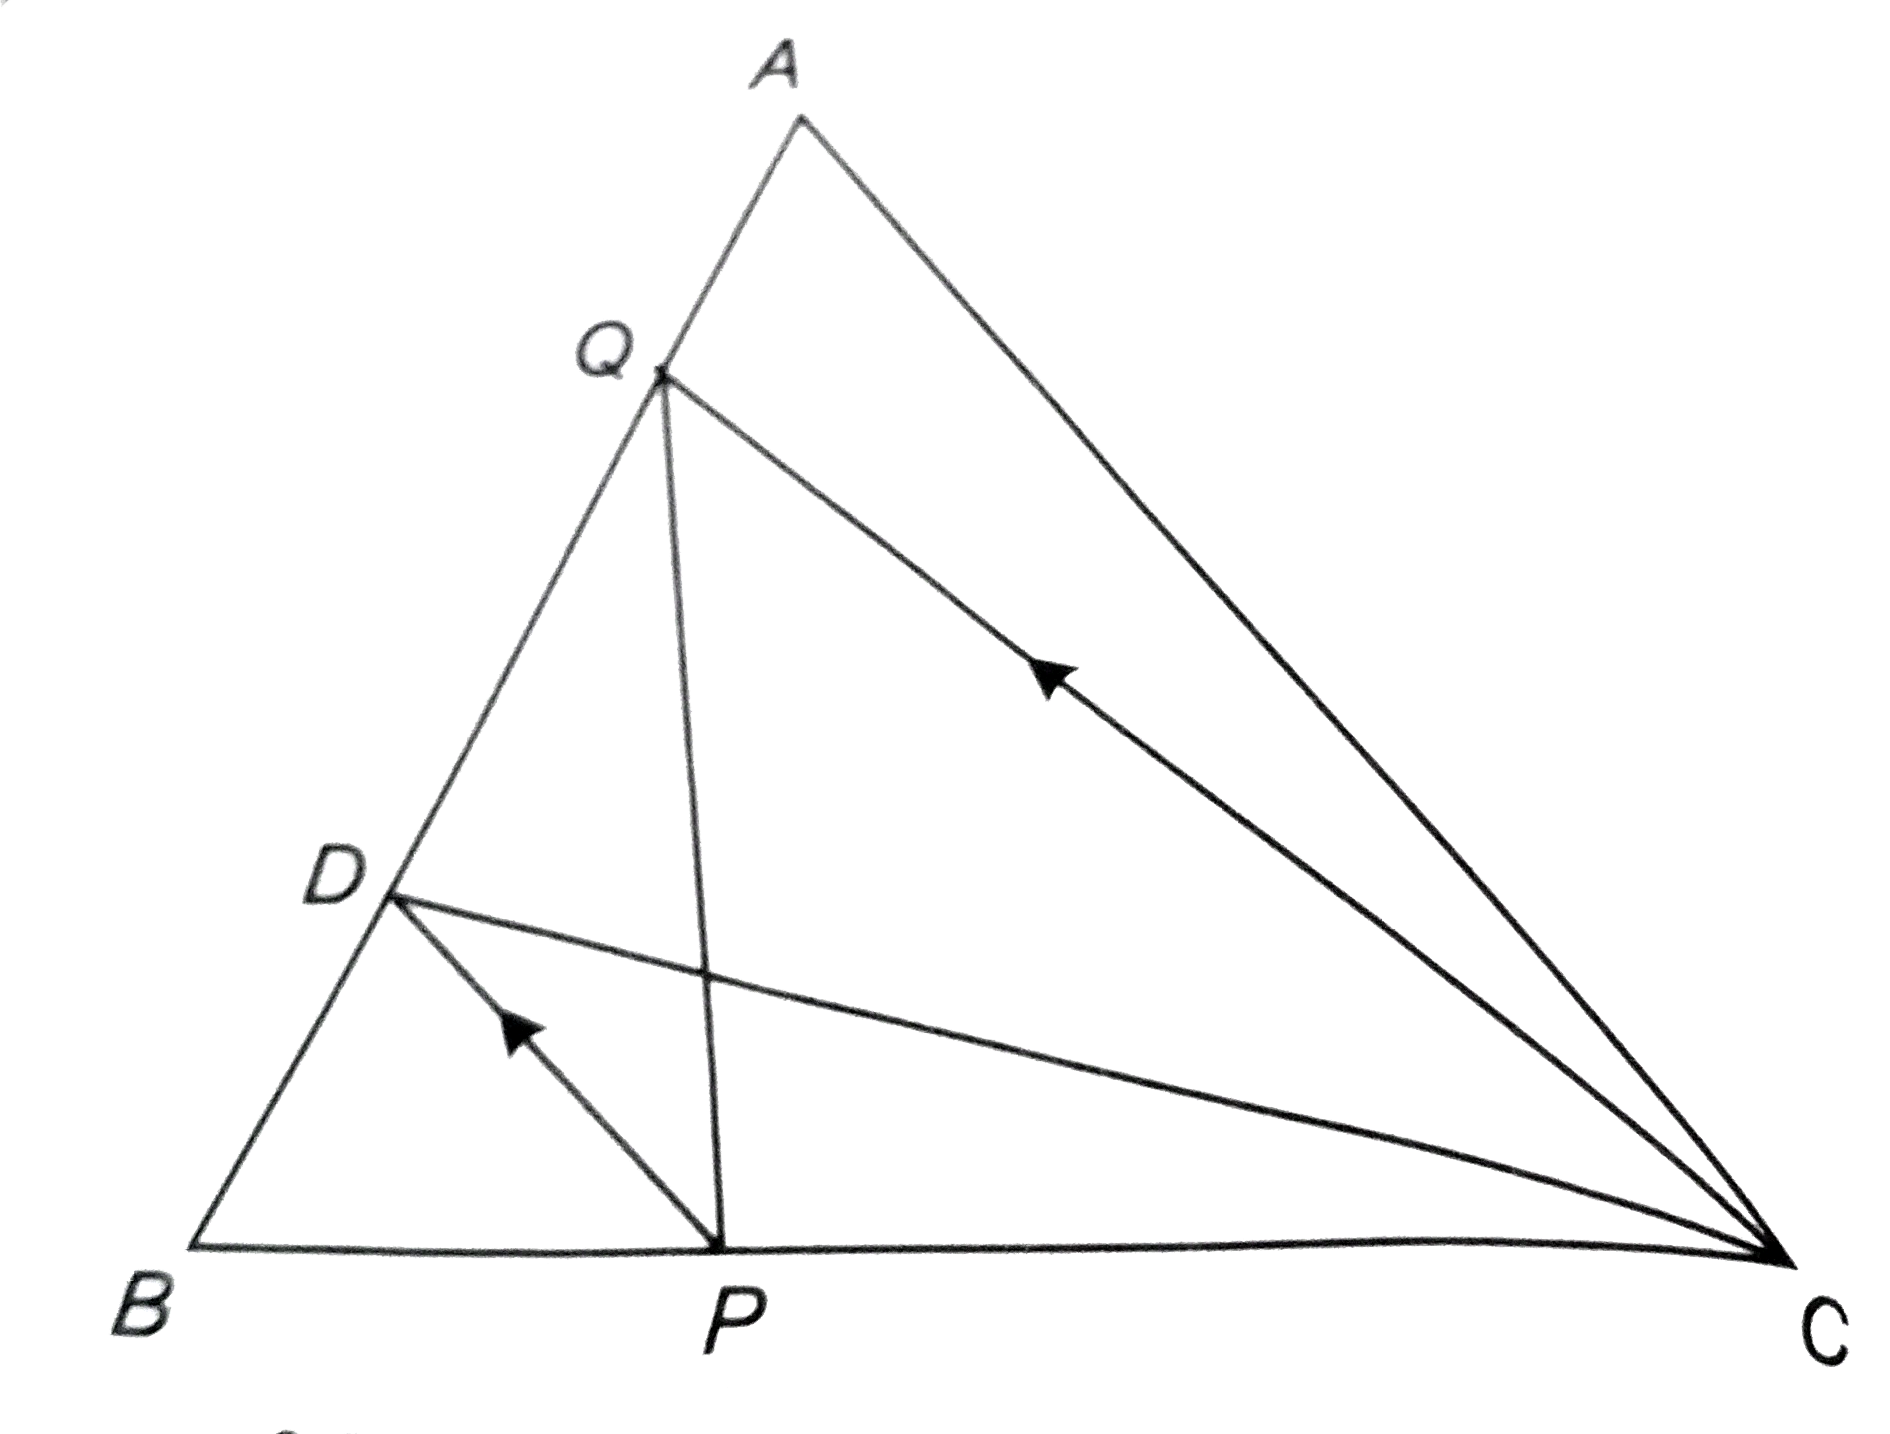 सलंग्न चित्र में, DeltaABC की भुजा AB का मध्य-बिन्दु D तथा भुजा BC पर कोई बिन्दु P है। यदि CQ || PD तो सिद्ध कीजिए कि    DeltaBPQ का क्षेत्रफल =(1)/(2)DeltaABC का क्षेत्रफल।